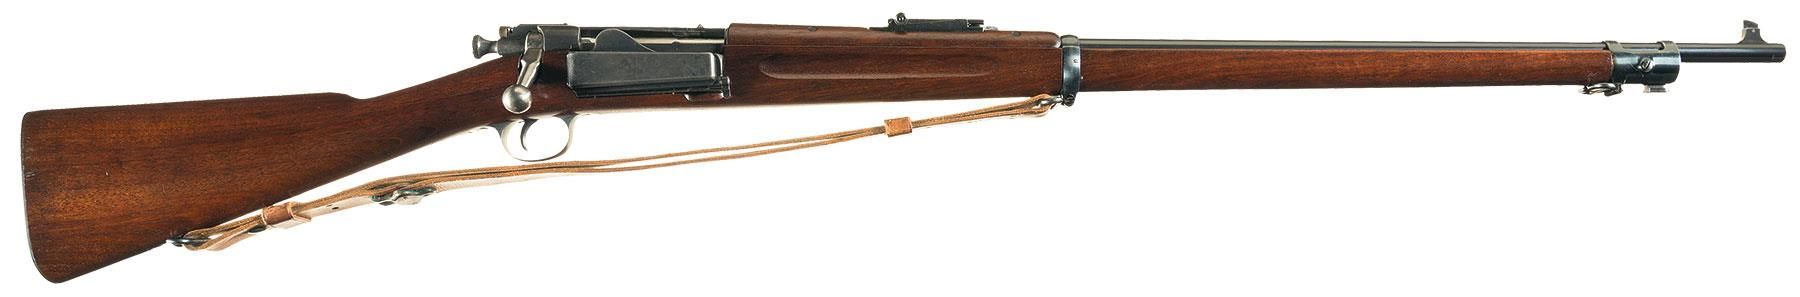 Krag Jorgensen M1898 rifle